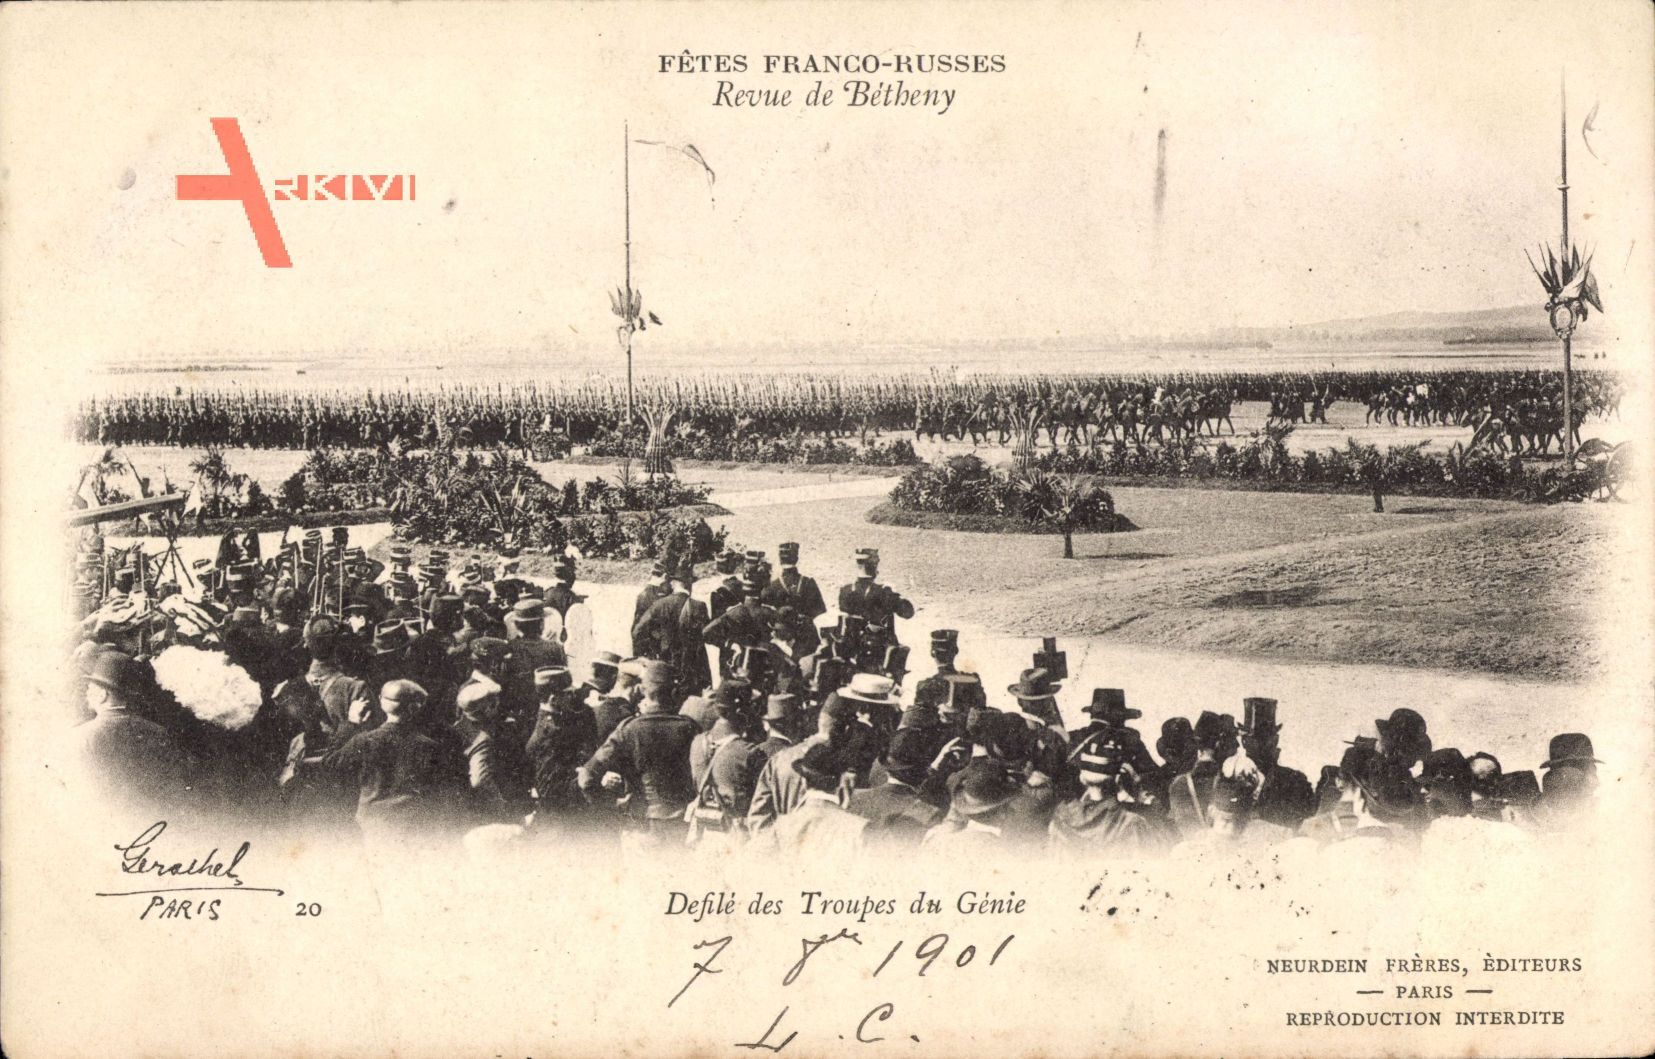 Fêtes Franco Russes, Revue de Bétheny, Défilé des Troupes du Génie 1901